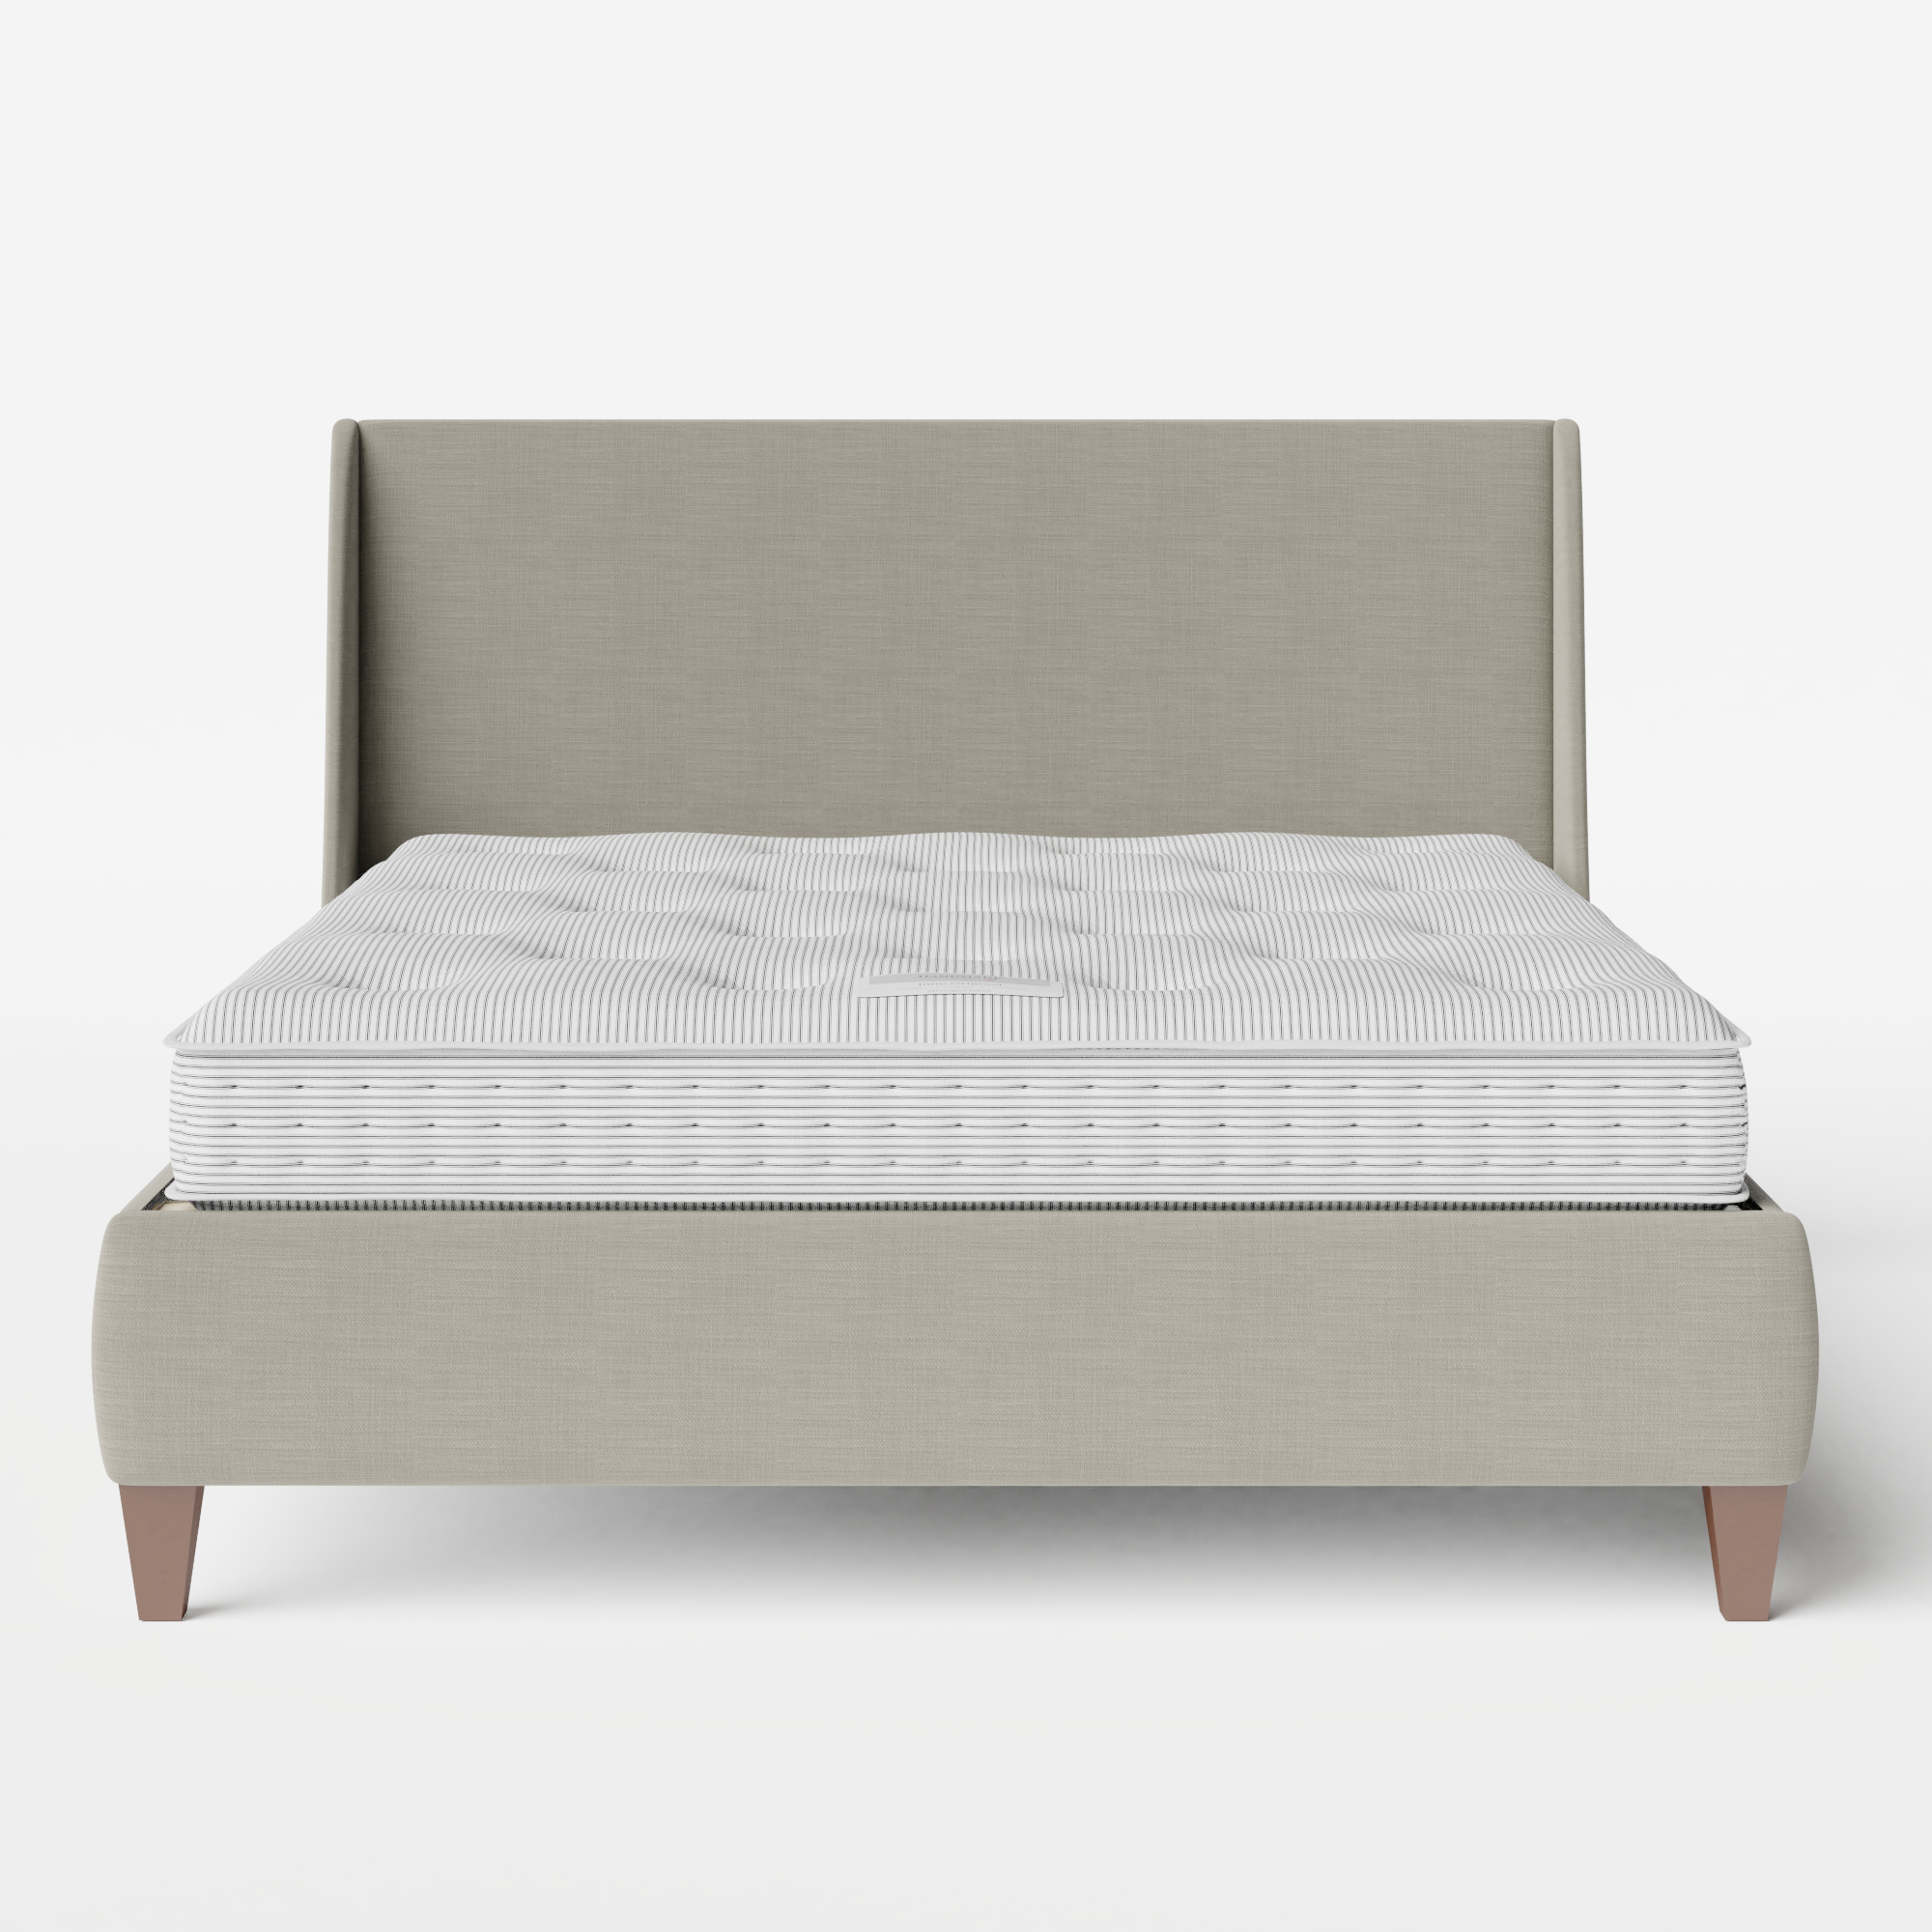 Sunderland cama tapizada en tela gris con colchón